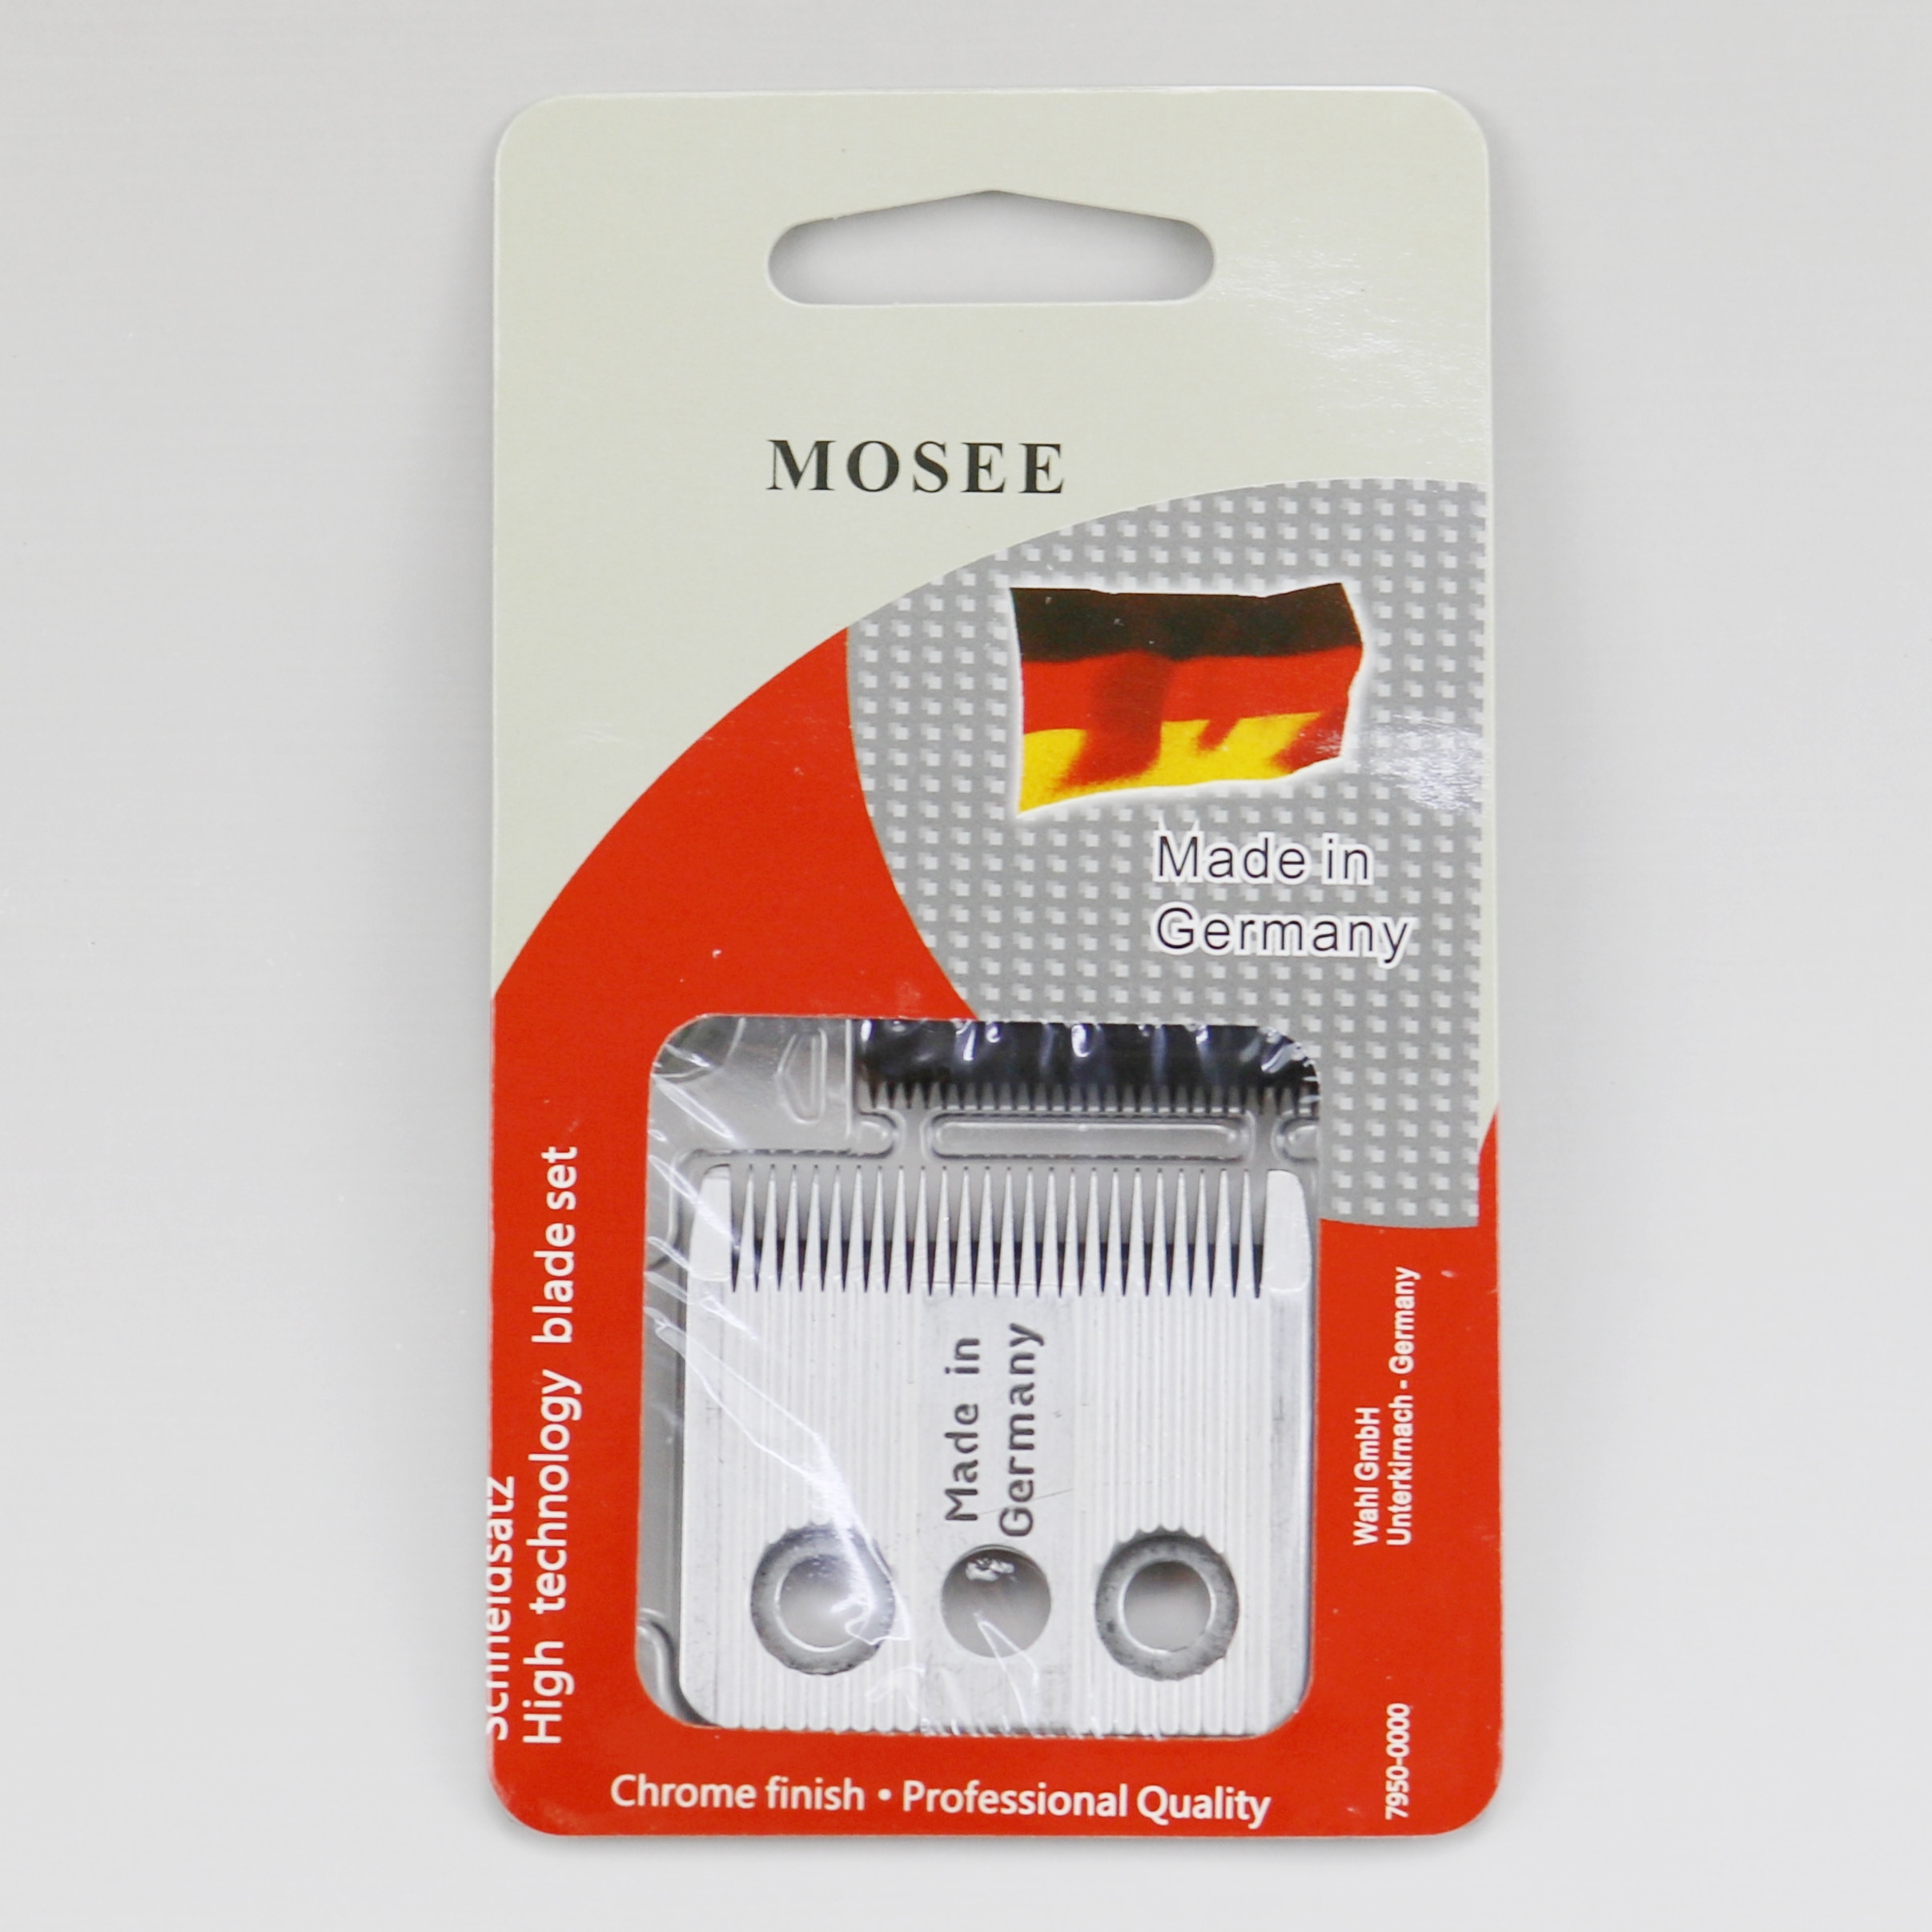 Moser hair clipper 1170(C)/ 1400(A-F) / 1420(A-C) /Ŭ..